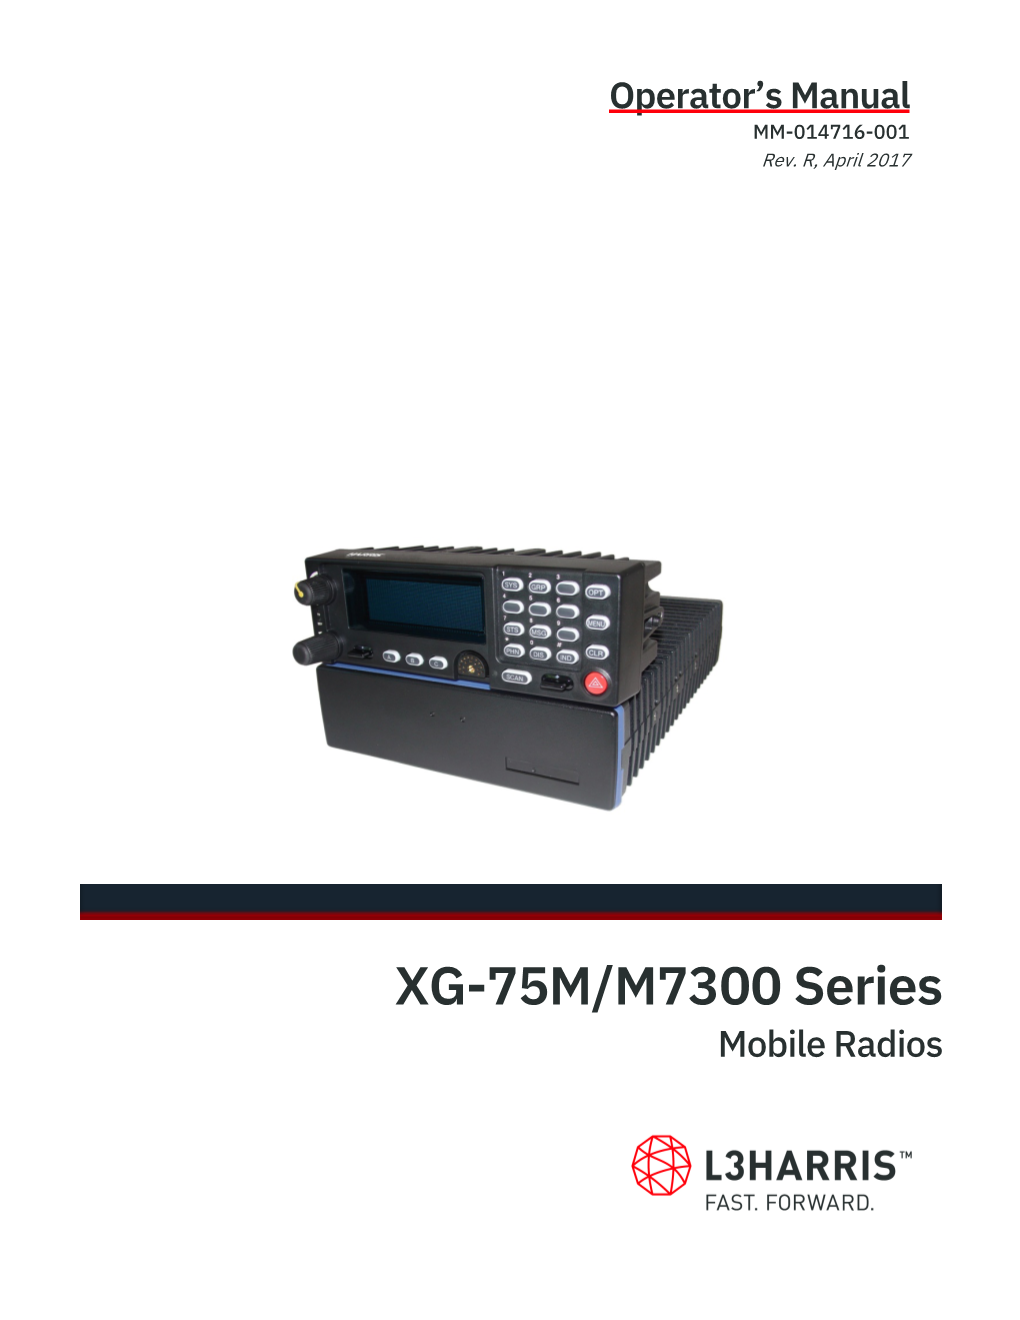 MM-014716-001, Rev. R, XG-75M/M7300 Series Mobile Radios